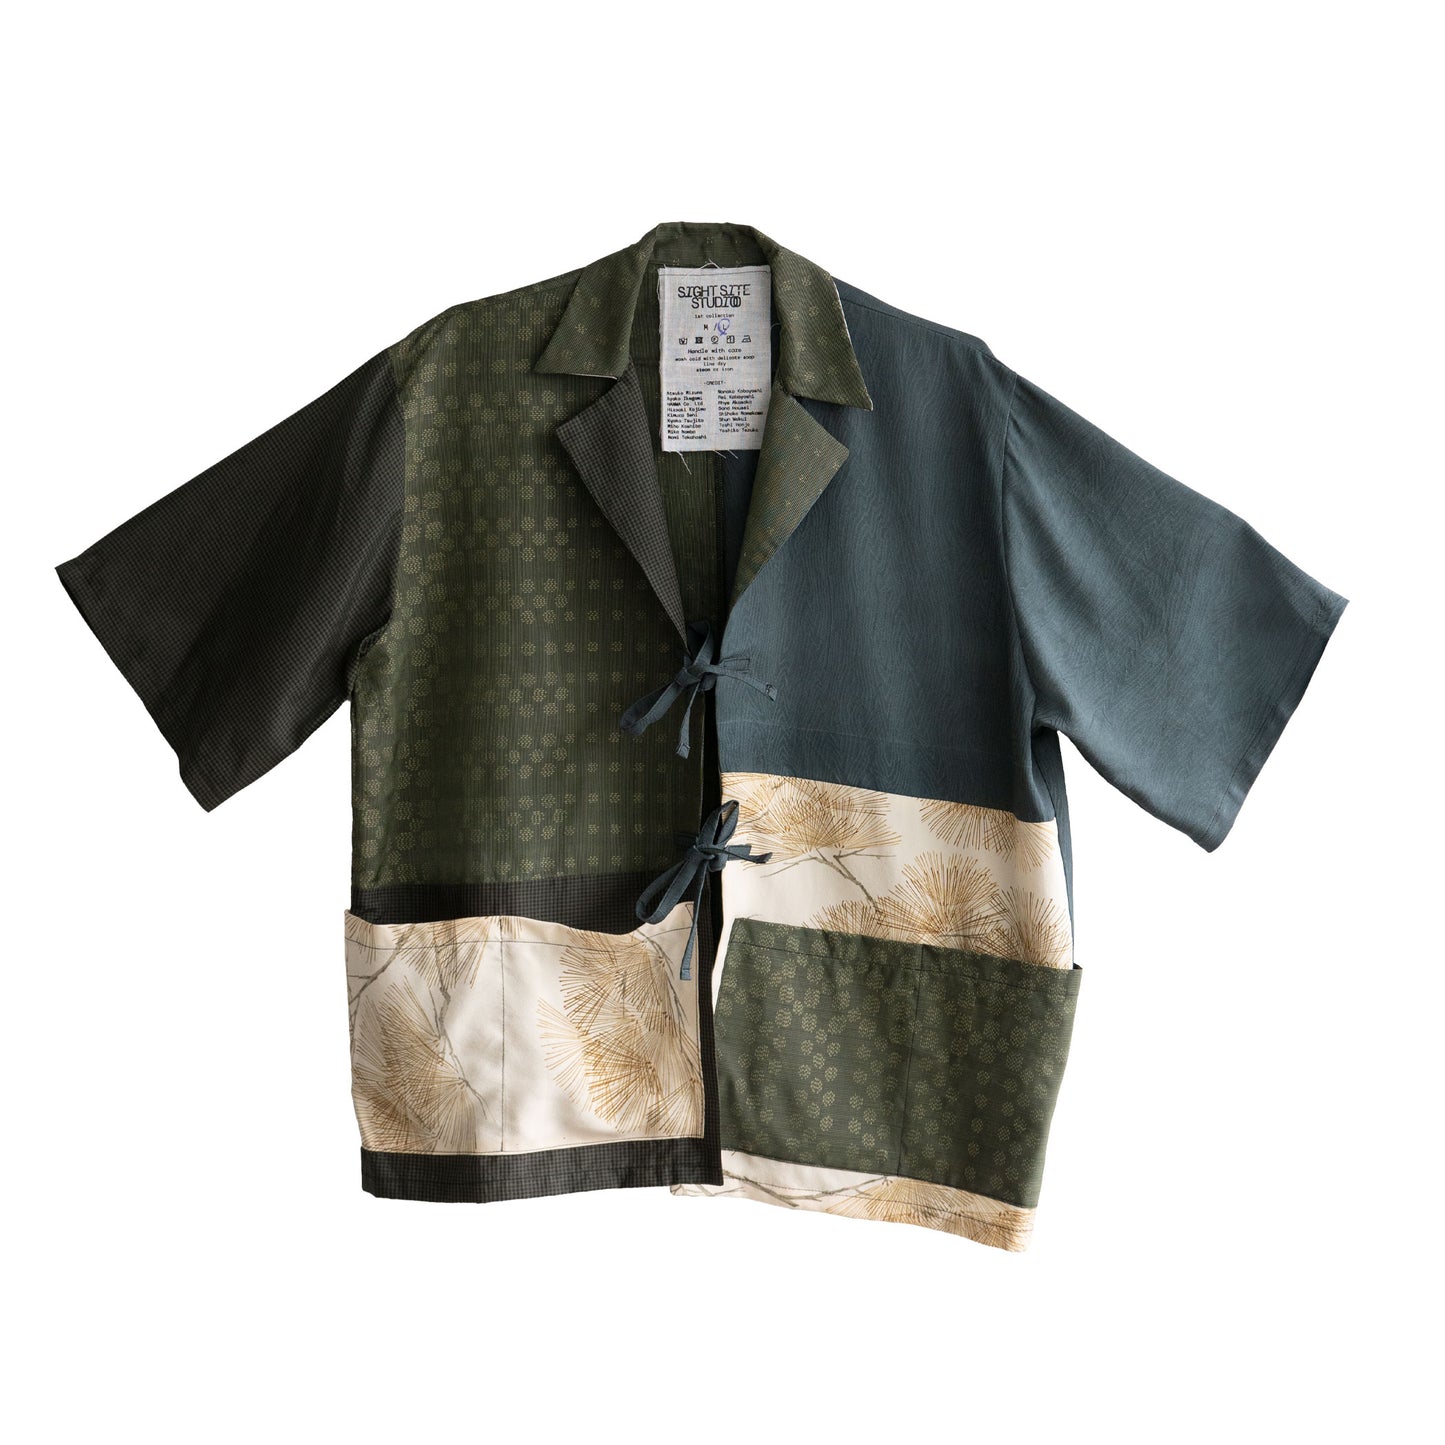 Kimono Working Shirts - Green 04 L